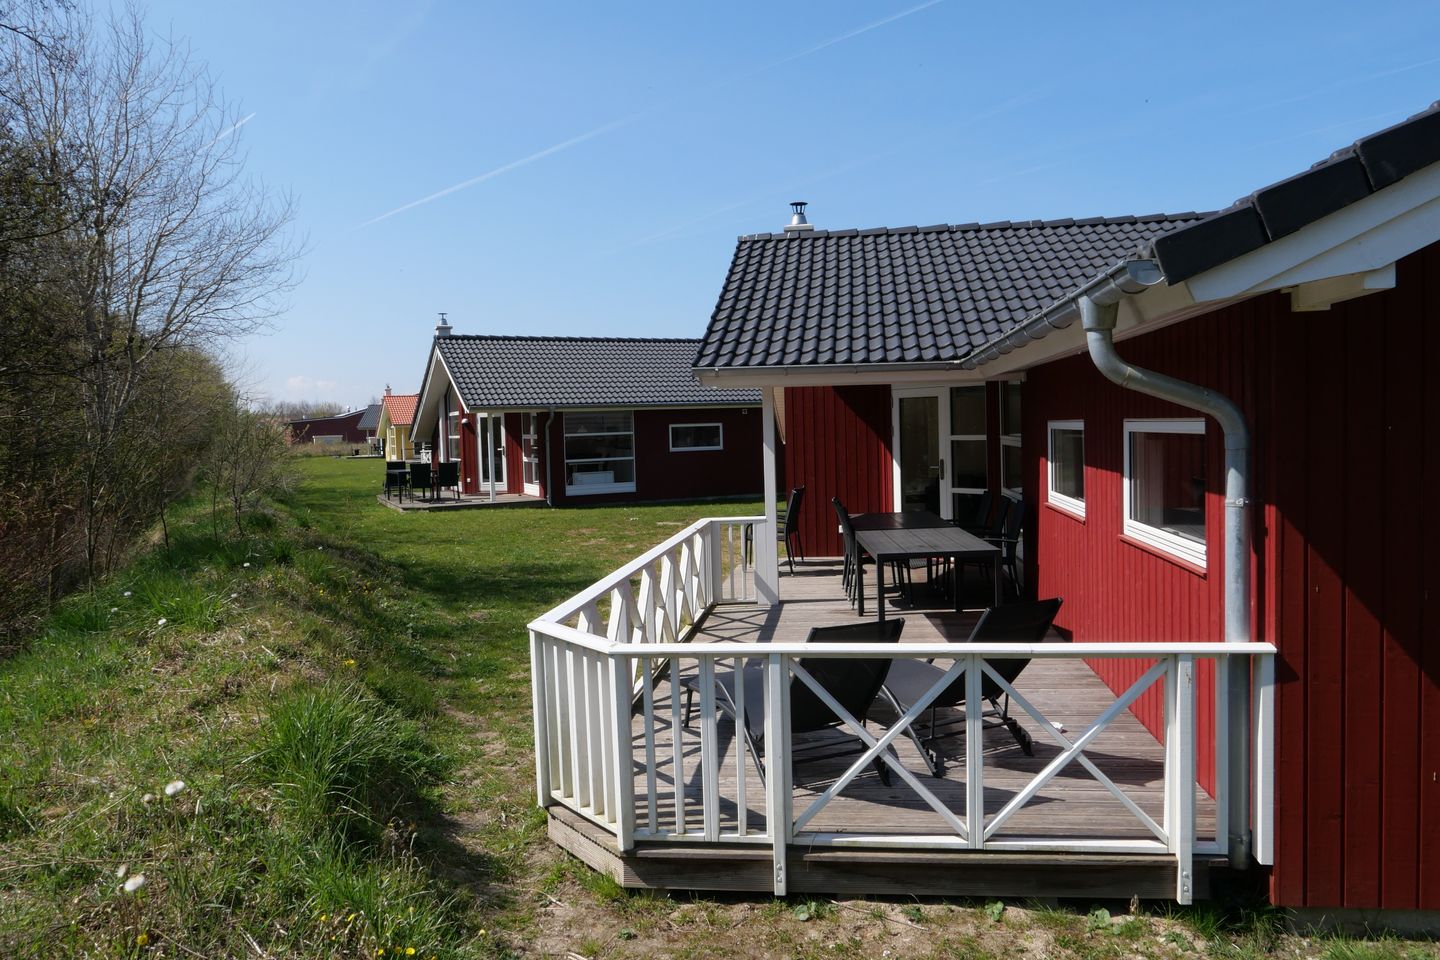 Ferienhaus Typ D - unser Ferienhaus mit viel Platz  in Schleswig Holstein